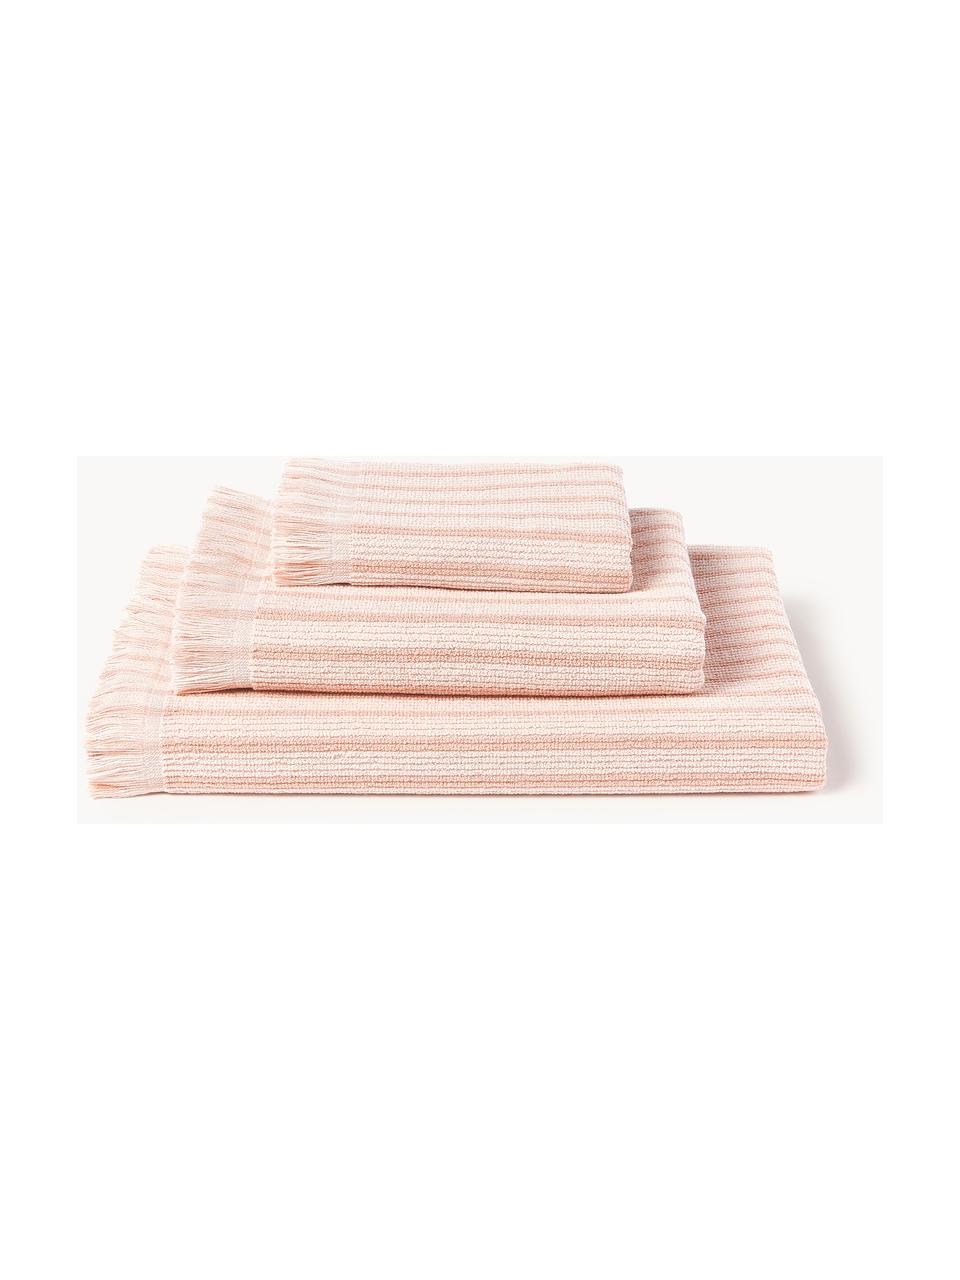 Komplet ręczników Irma, różne rozmiary, Jasny różowy, 4 elem. (ręcznik do rąk, ręcznik kąpielowy)